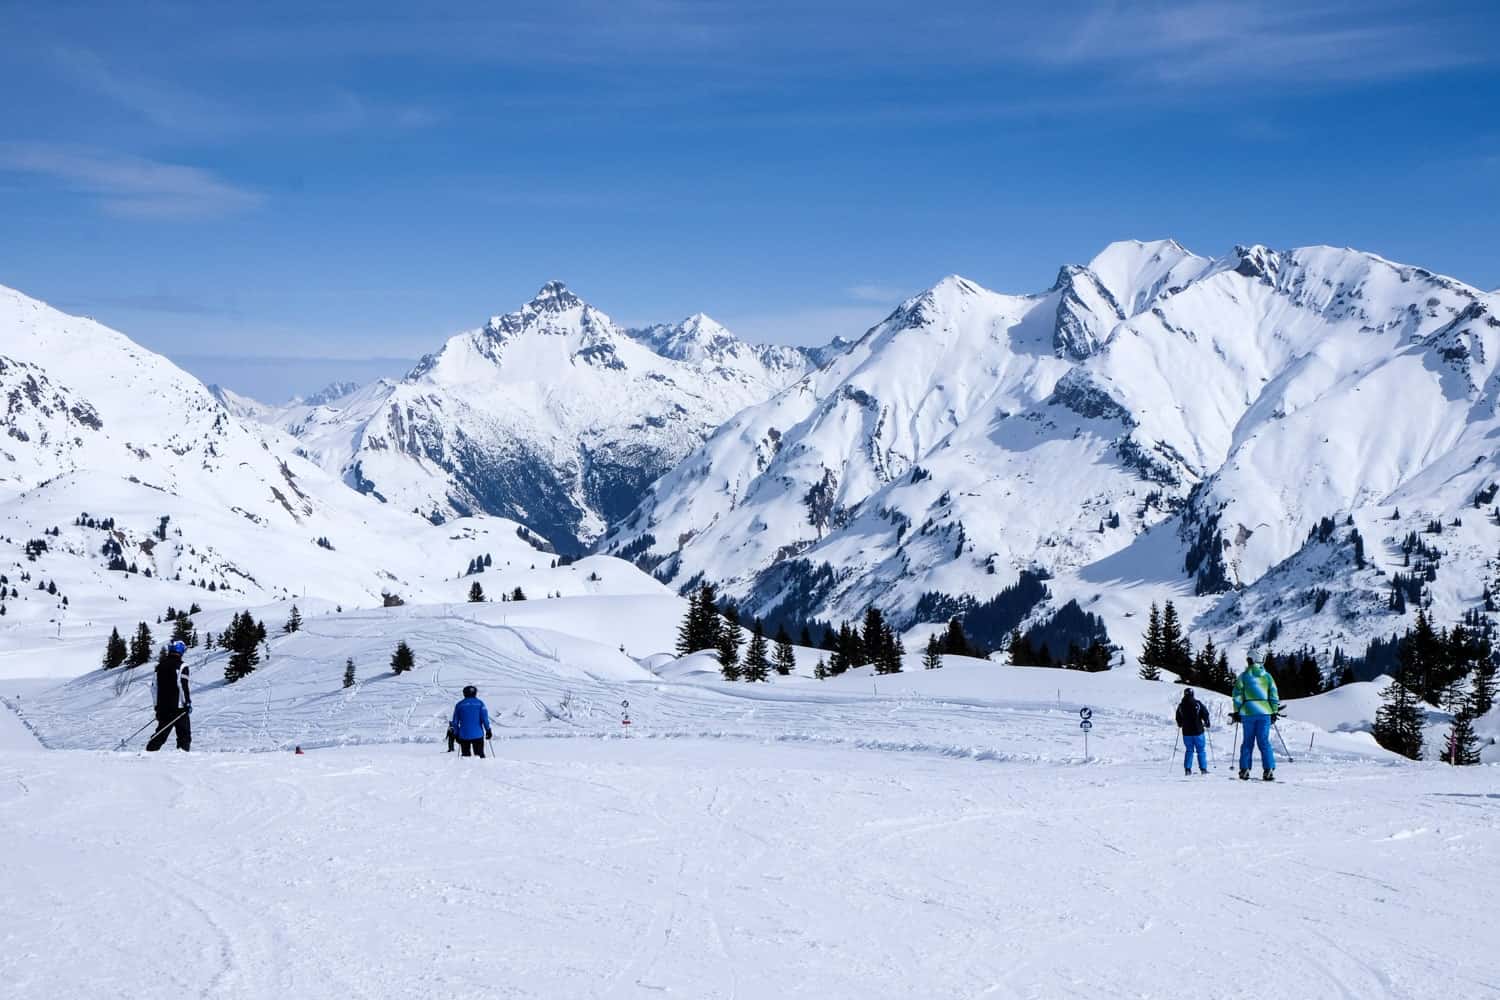 Ski slopes of Lech Zürs am Arlberg in Austria